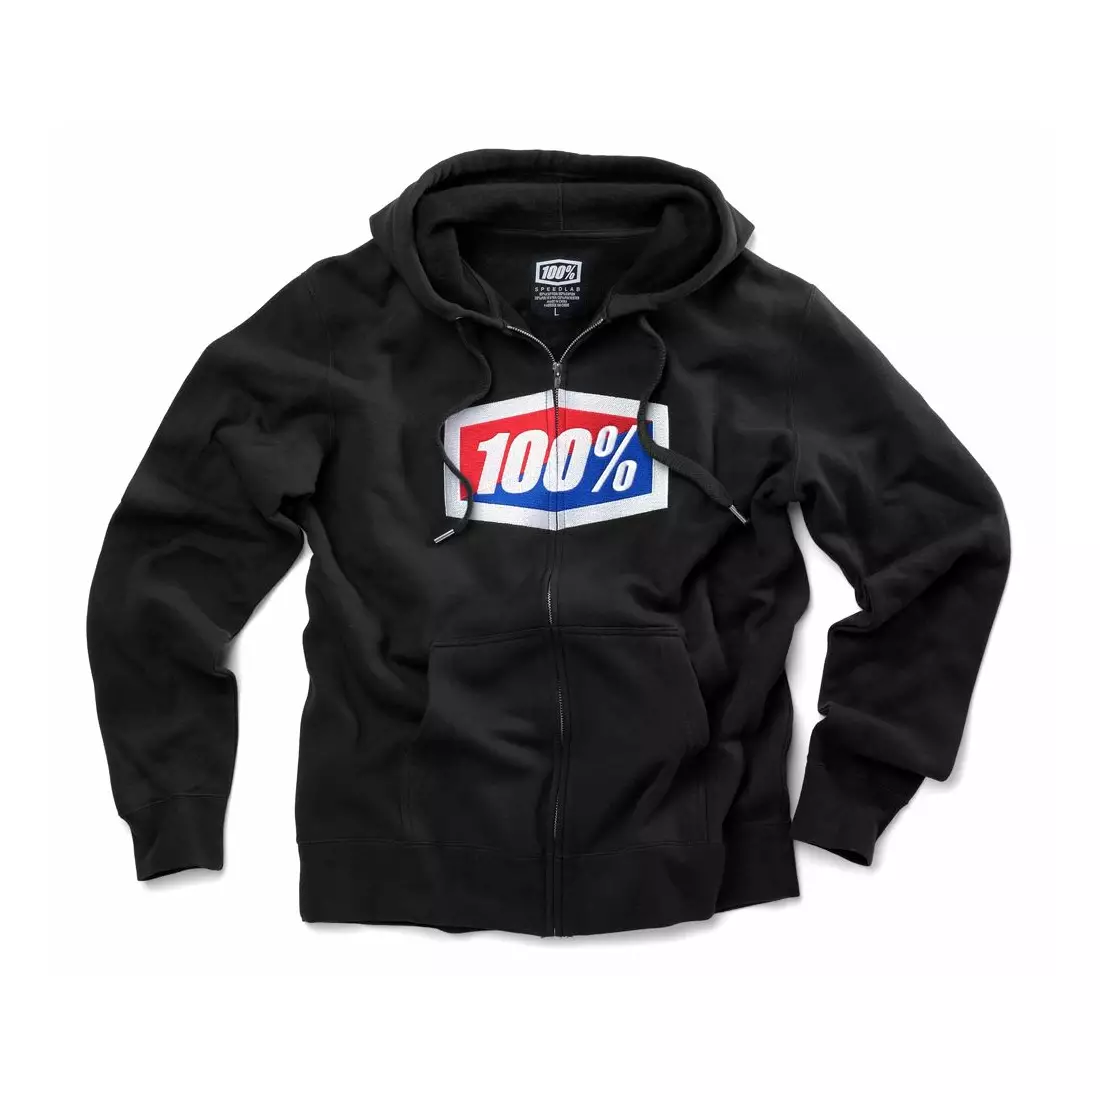 100% pánská sportovní mikina official hooded zip black STO-36005-001-10